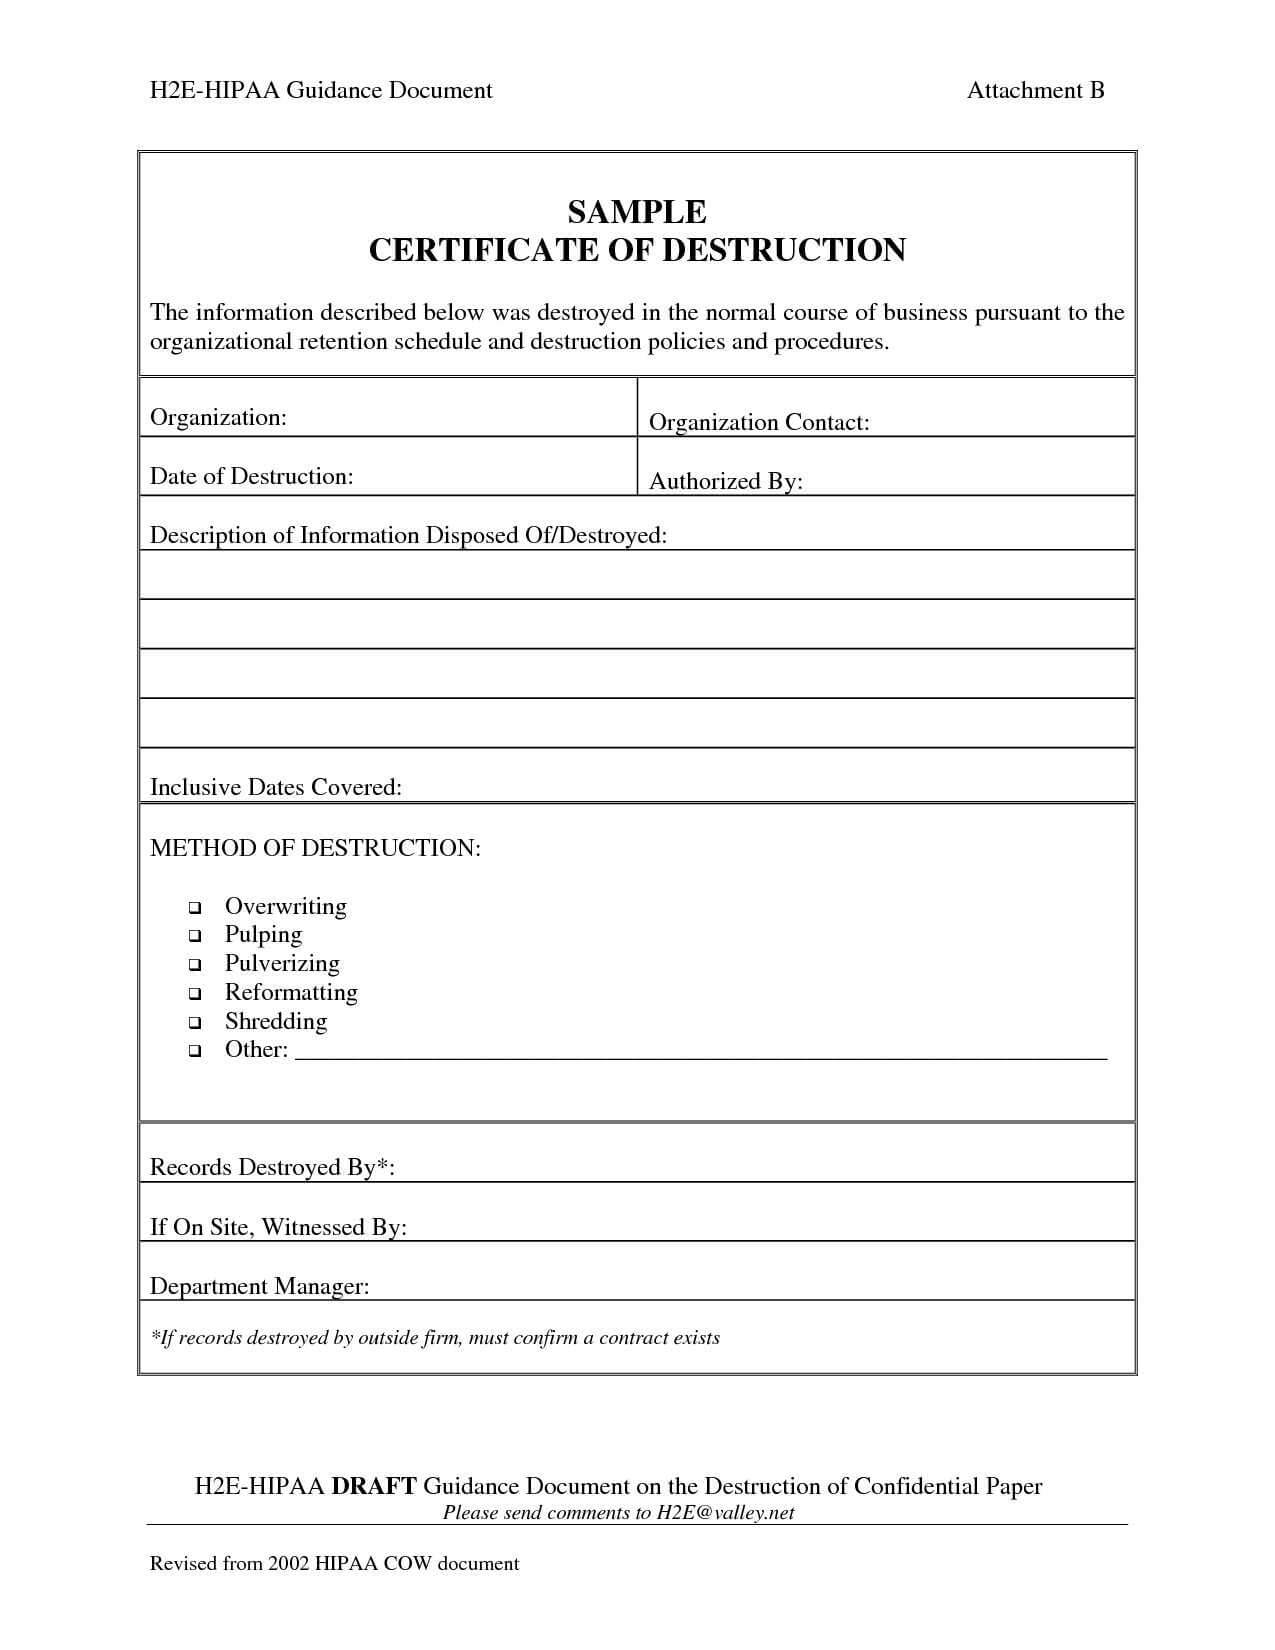 001 Template Ideas Certificate Of Destruction Frightening Pertaining To Free Certificate Of Destruction Template